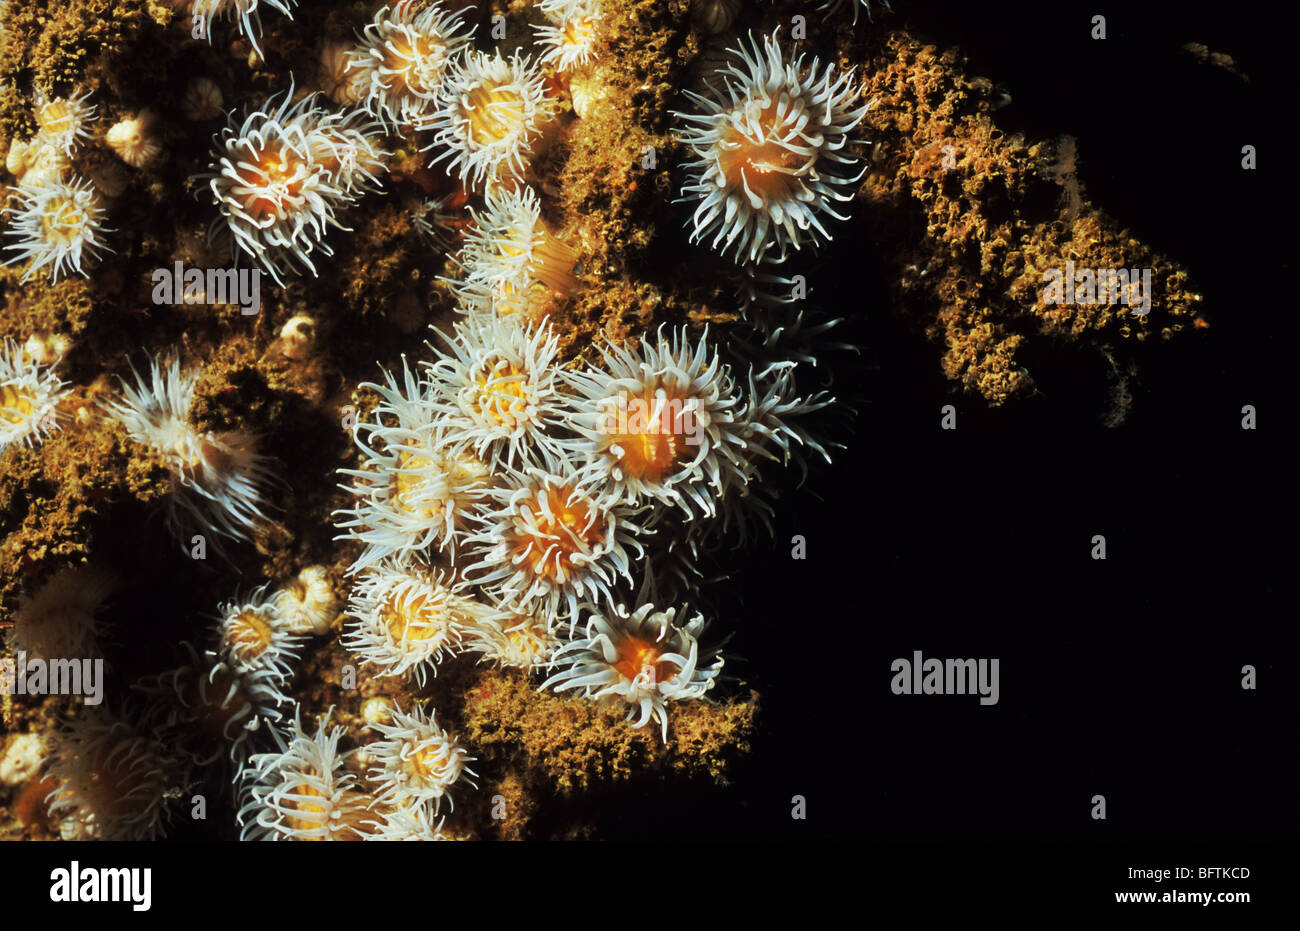 Seeanemone. Actinothoe Sphyrodeta.  Nesseltieren. Schöne Anemone, gefunden an der Südküste des Vereinigten Königreichs. Tauchen Tourismus, Scuba UK Stockfoto